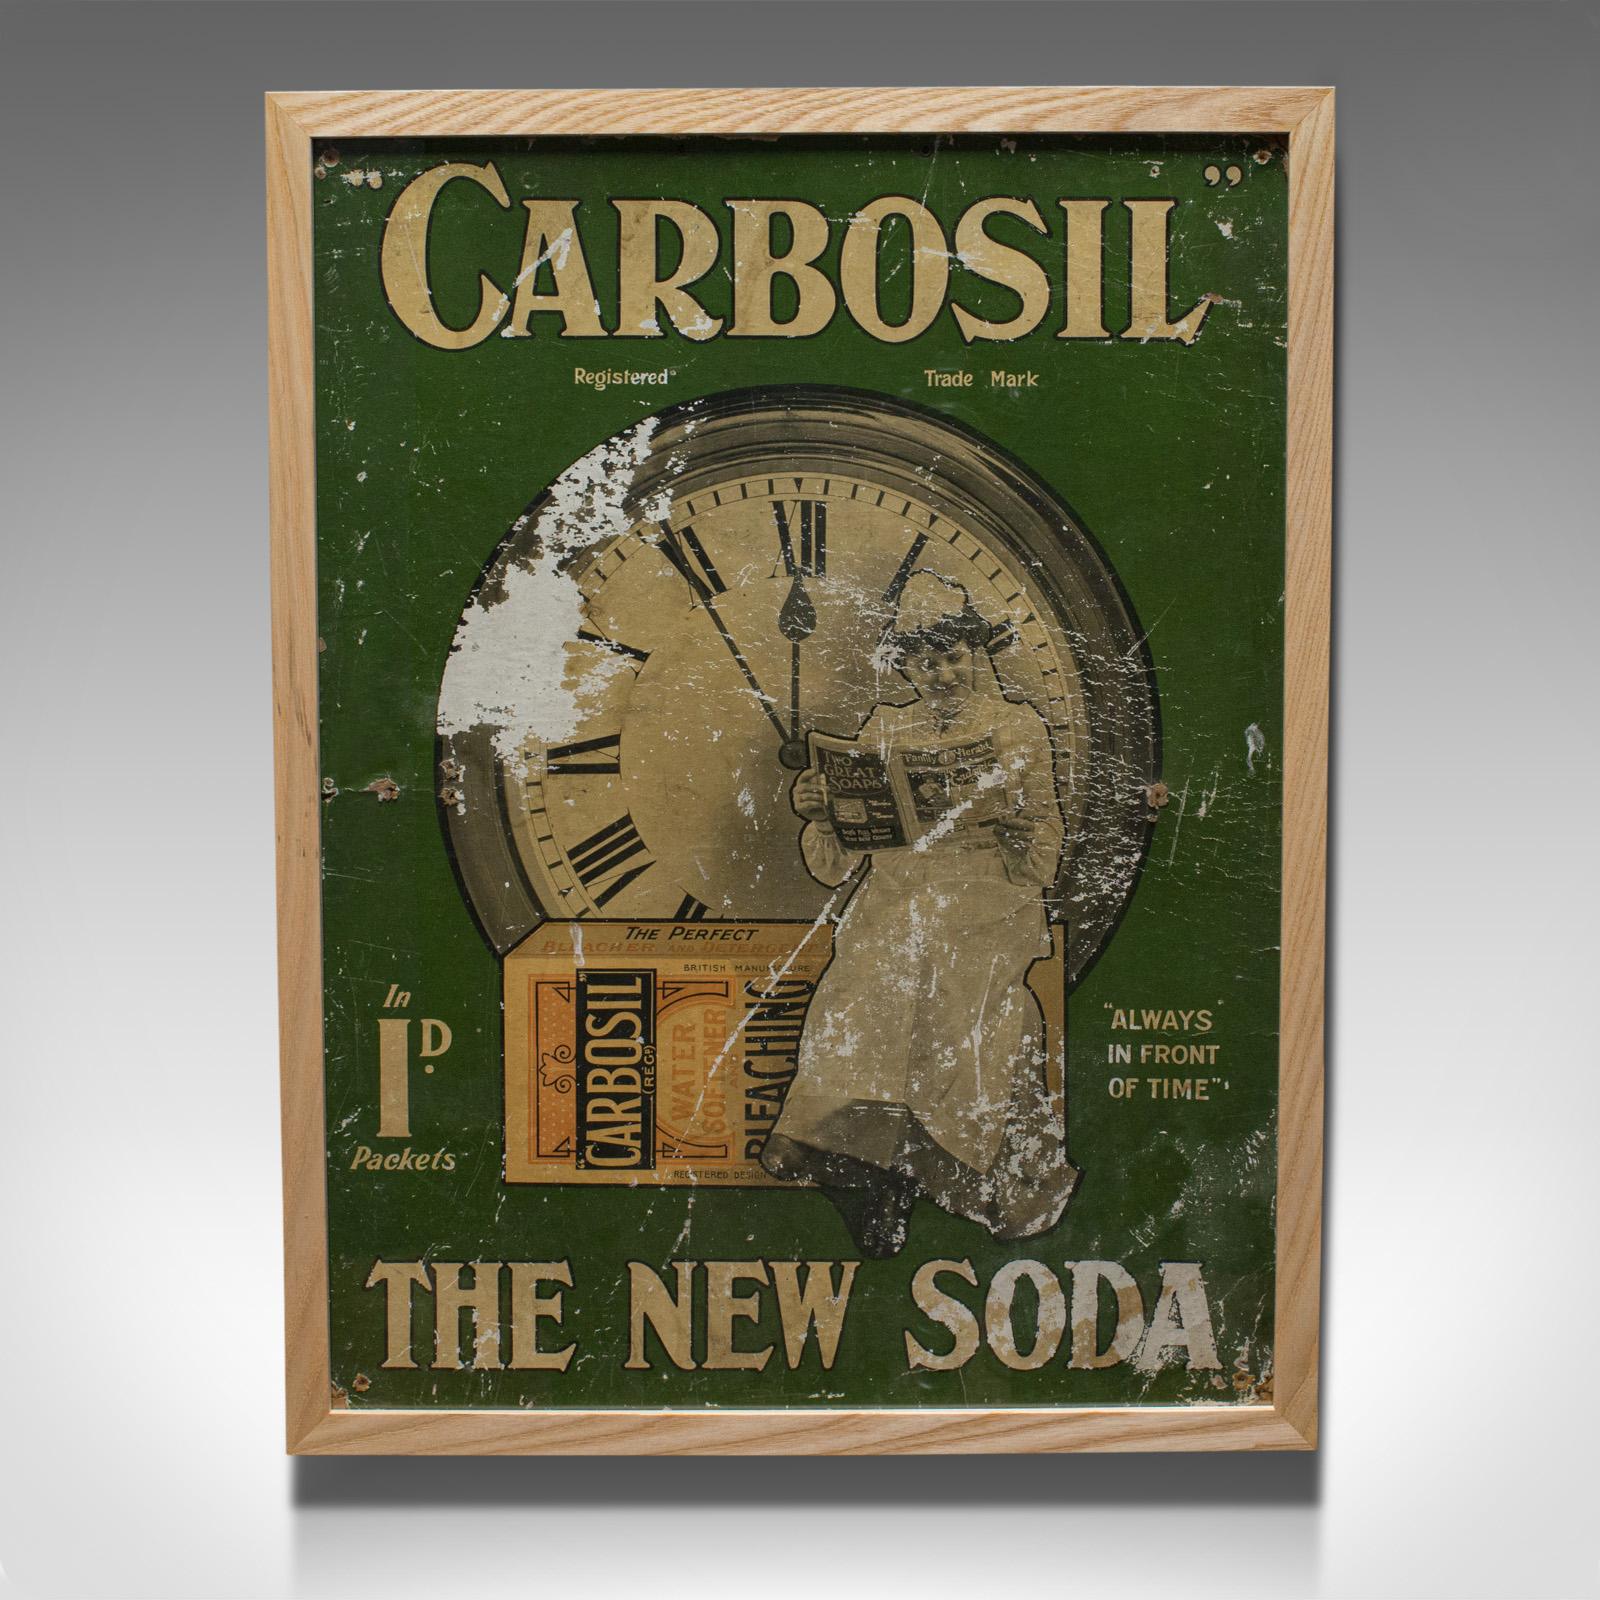 Il s'agit d'une publicité ancienne encadrée. Affiche publicitaire anglaise pour le savon Carbosil, datant de la période victorienne, vers 1900.

Une publicité de détail d'époque attrayante
Présente une patine d'ancienneté